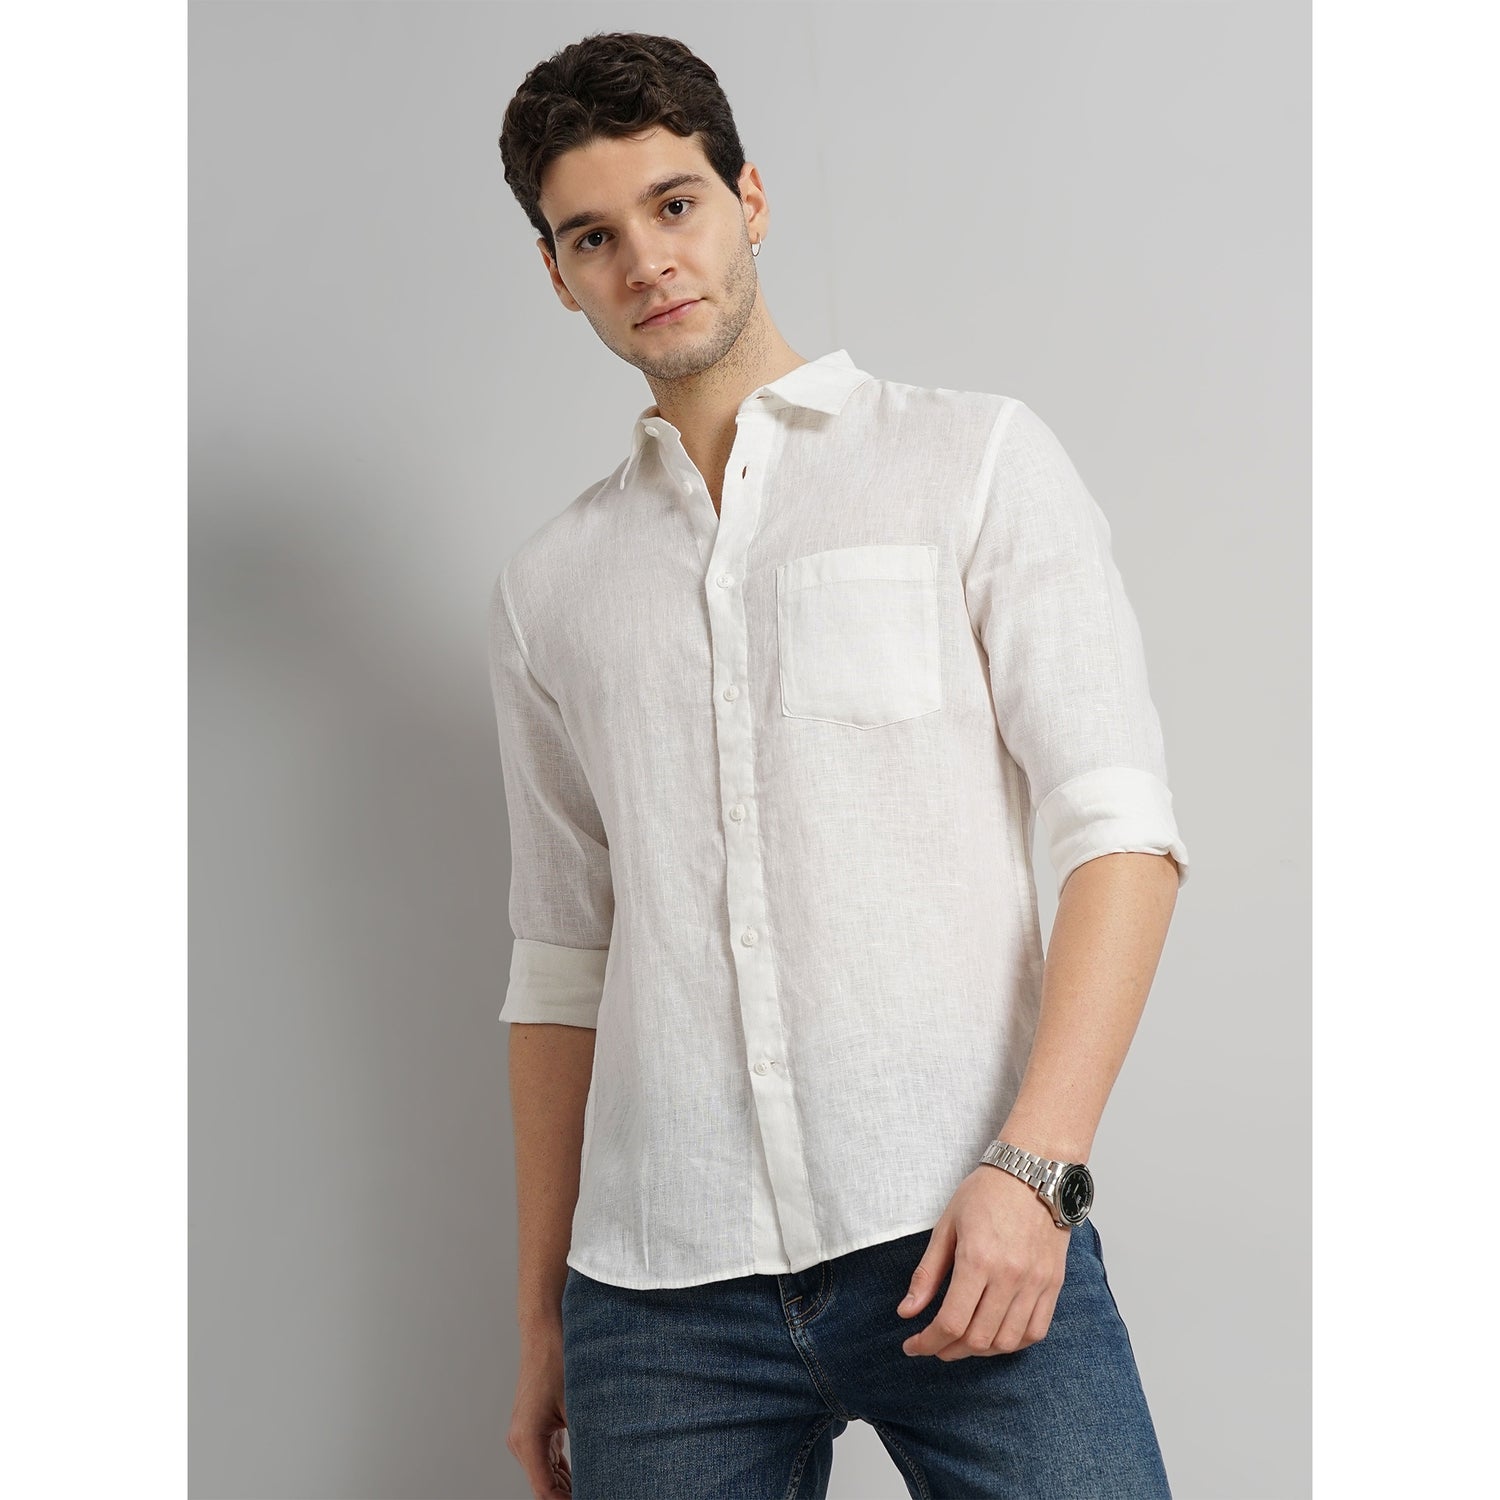 Men White Solid Regular Fit Linen Casual Shirt (GATALIN)